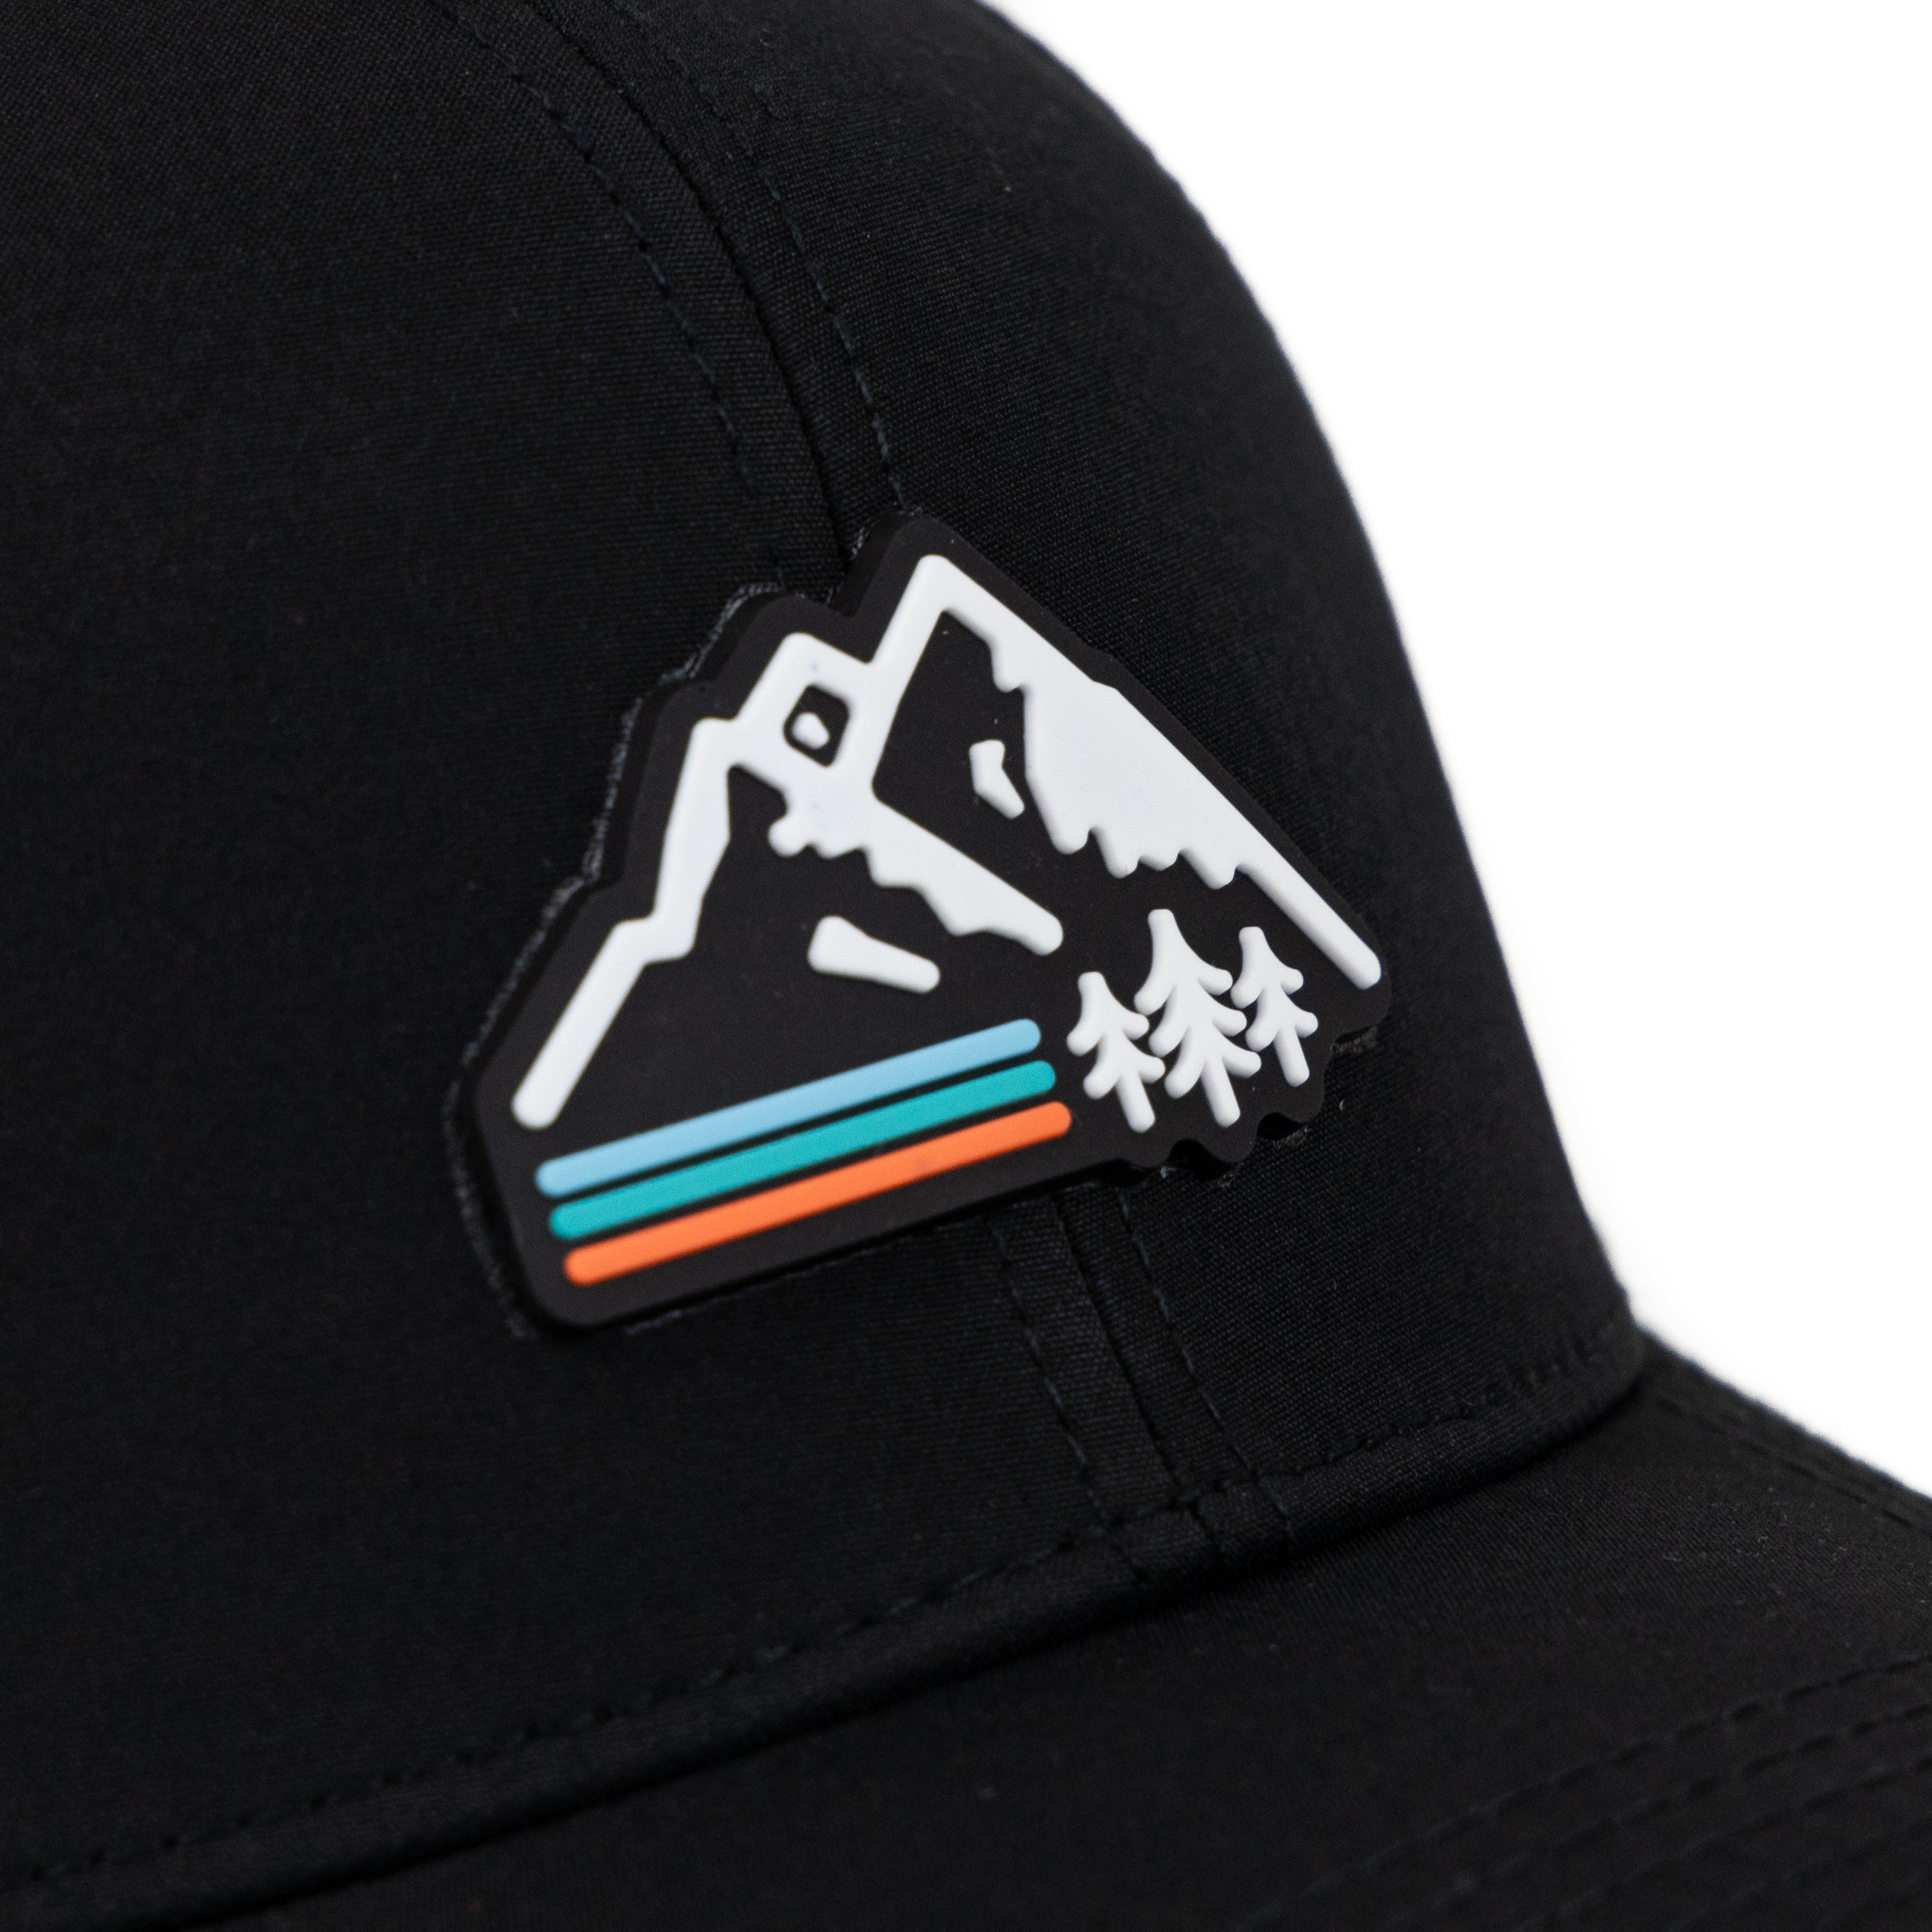 Retro Mountain AllTrek Performance Hat